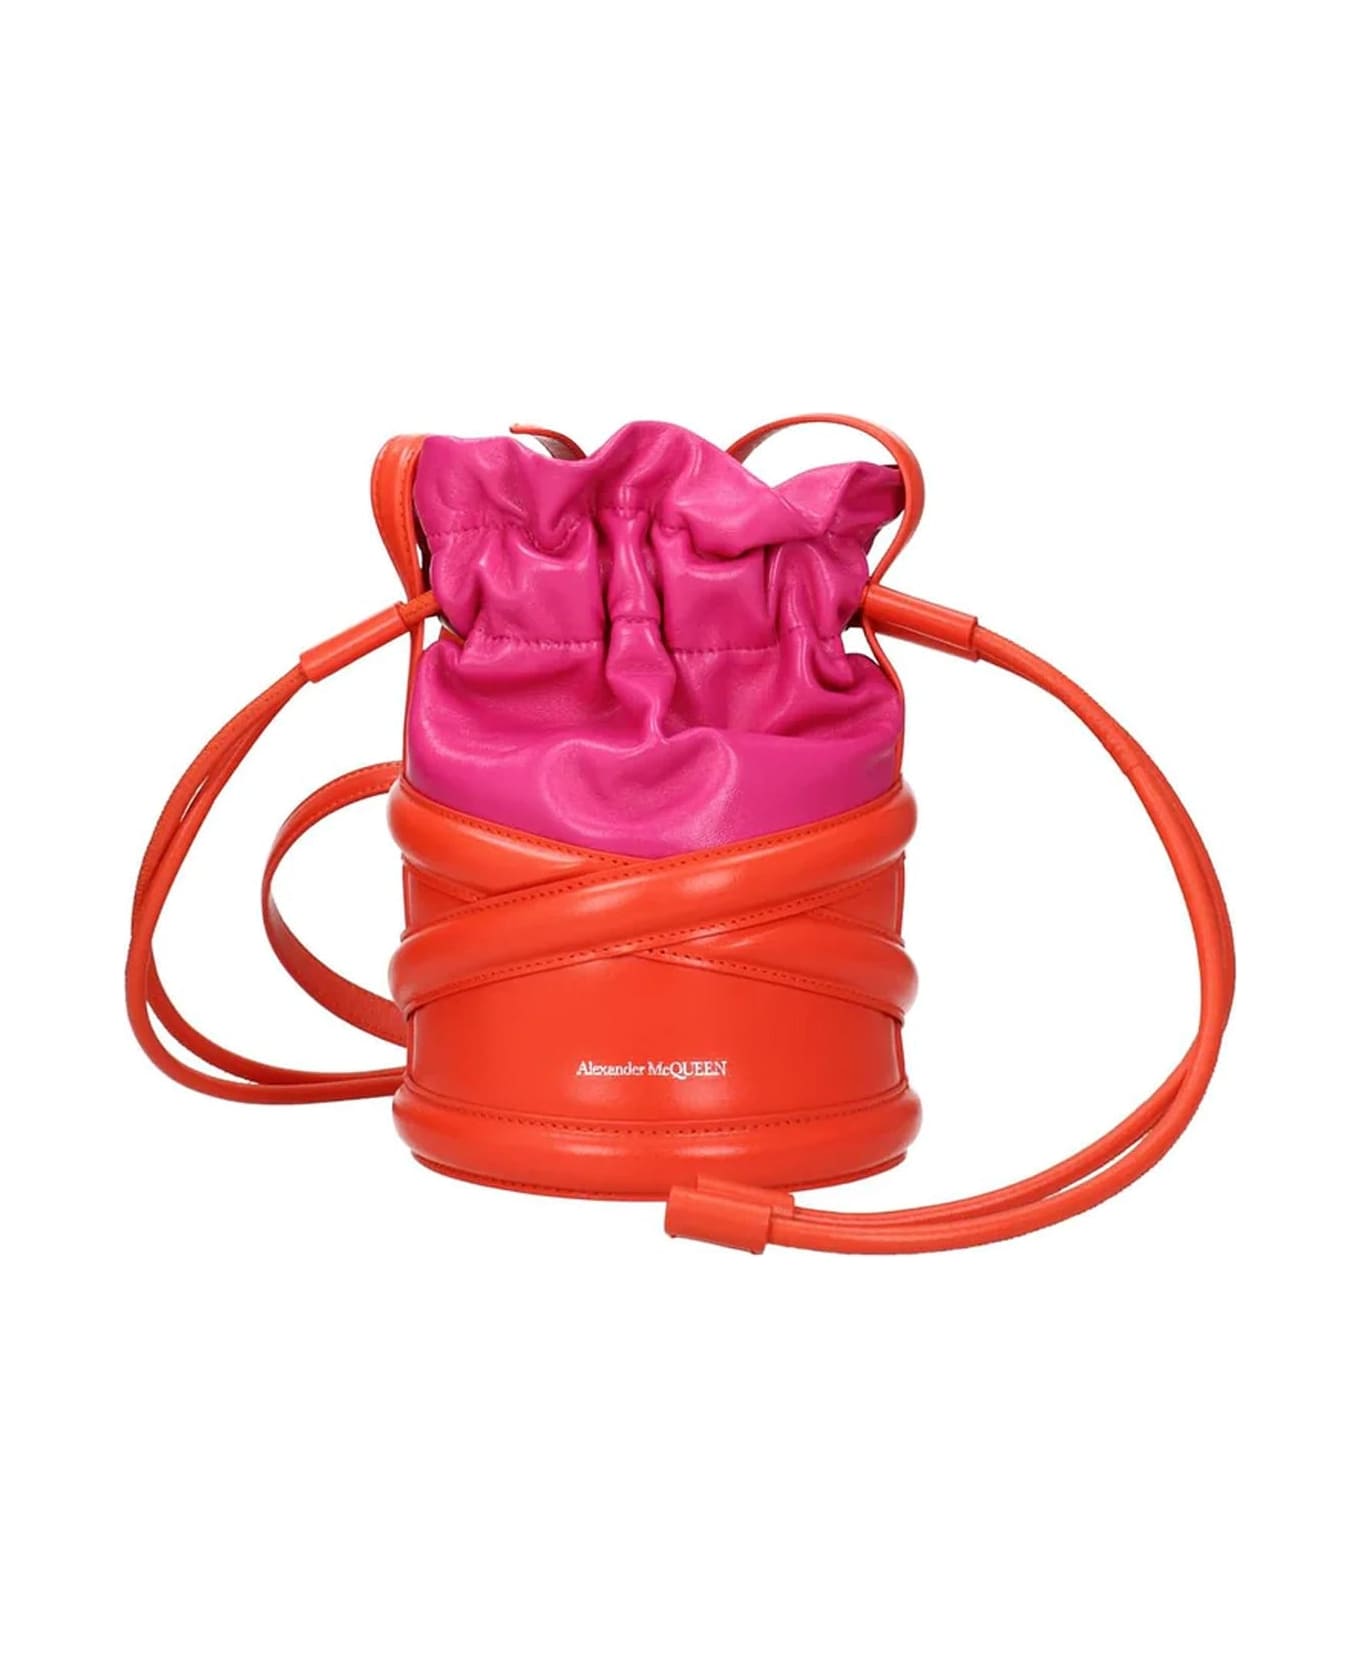 Alexander McQueen Curved Bucket Shoulder Bag - Pink